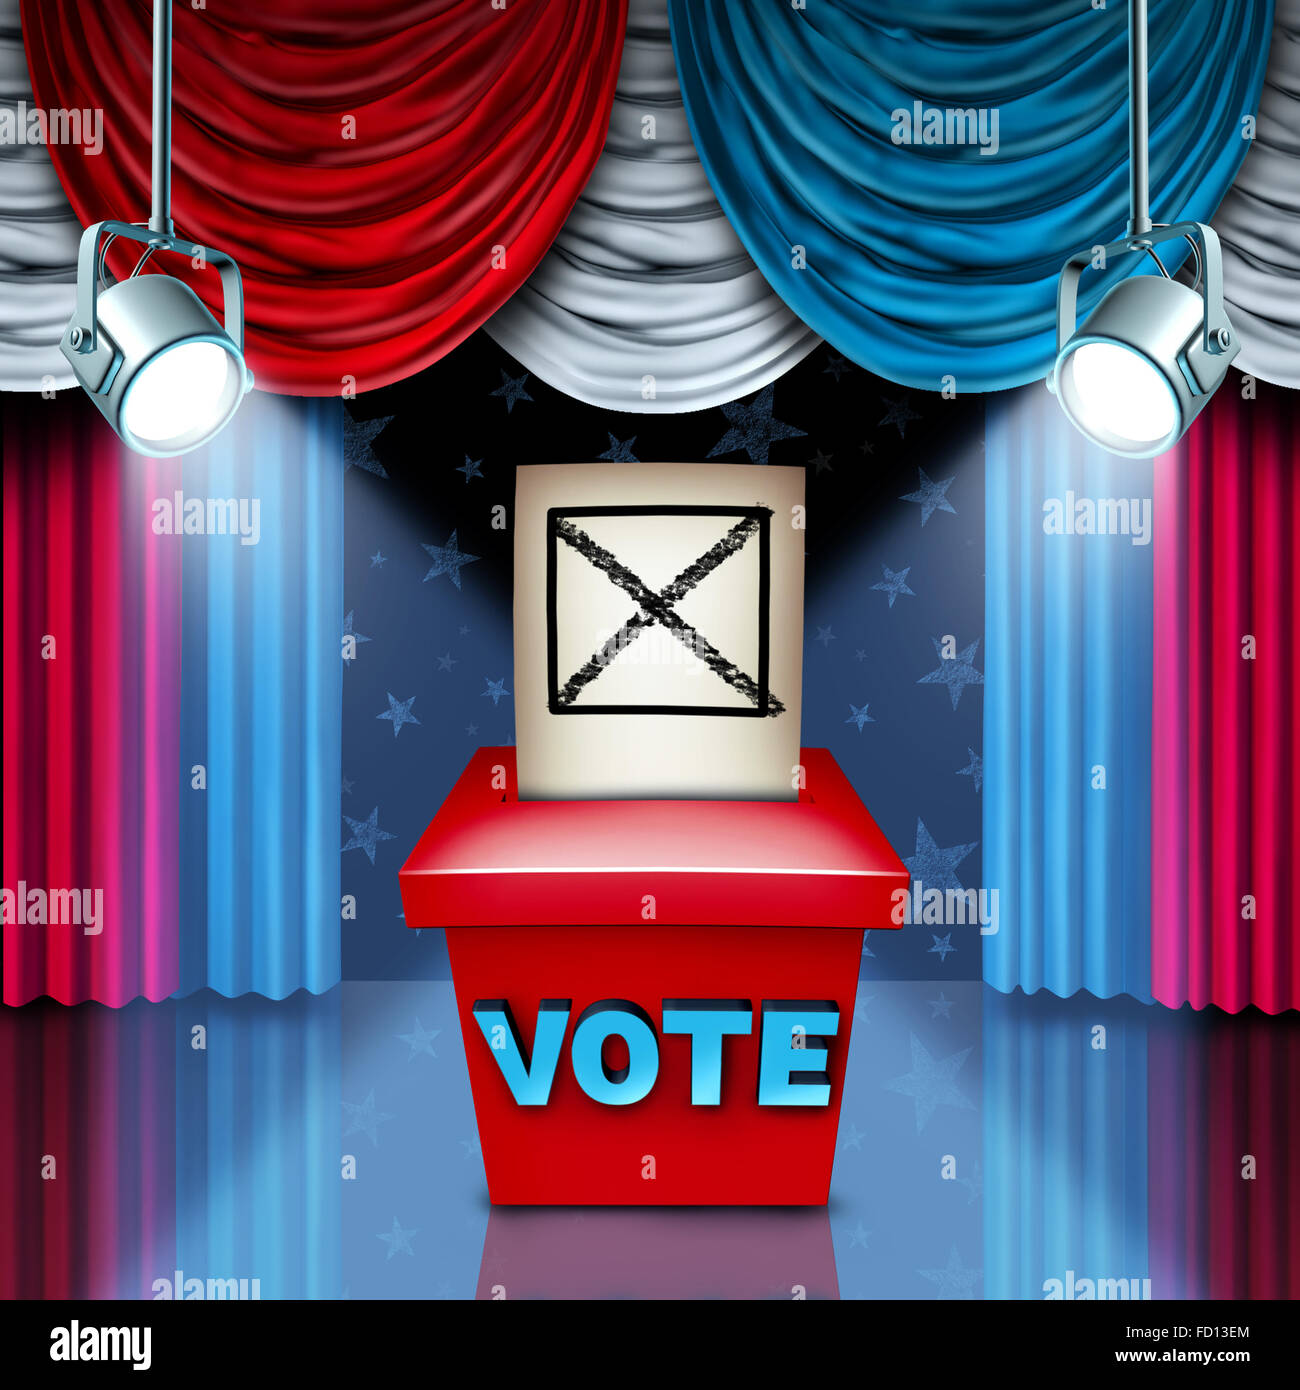 Amerikanische Stimmzettel Box Wahl-Konzept mit roten weißen und blauen USA Flagge Farbe Vorhänge als Metapher für eine politische Kampagnen auf Fragen der Sozialpolitik, die Abstimmung in einem freien demokratischen Prozess zu gewinnen. Stockfoto